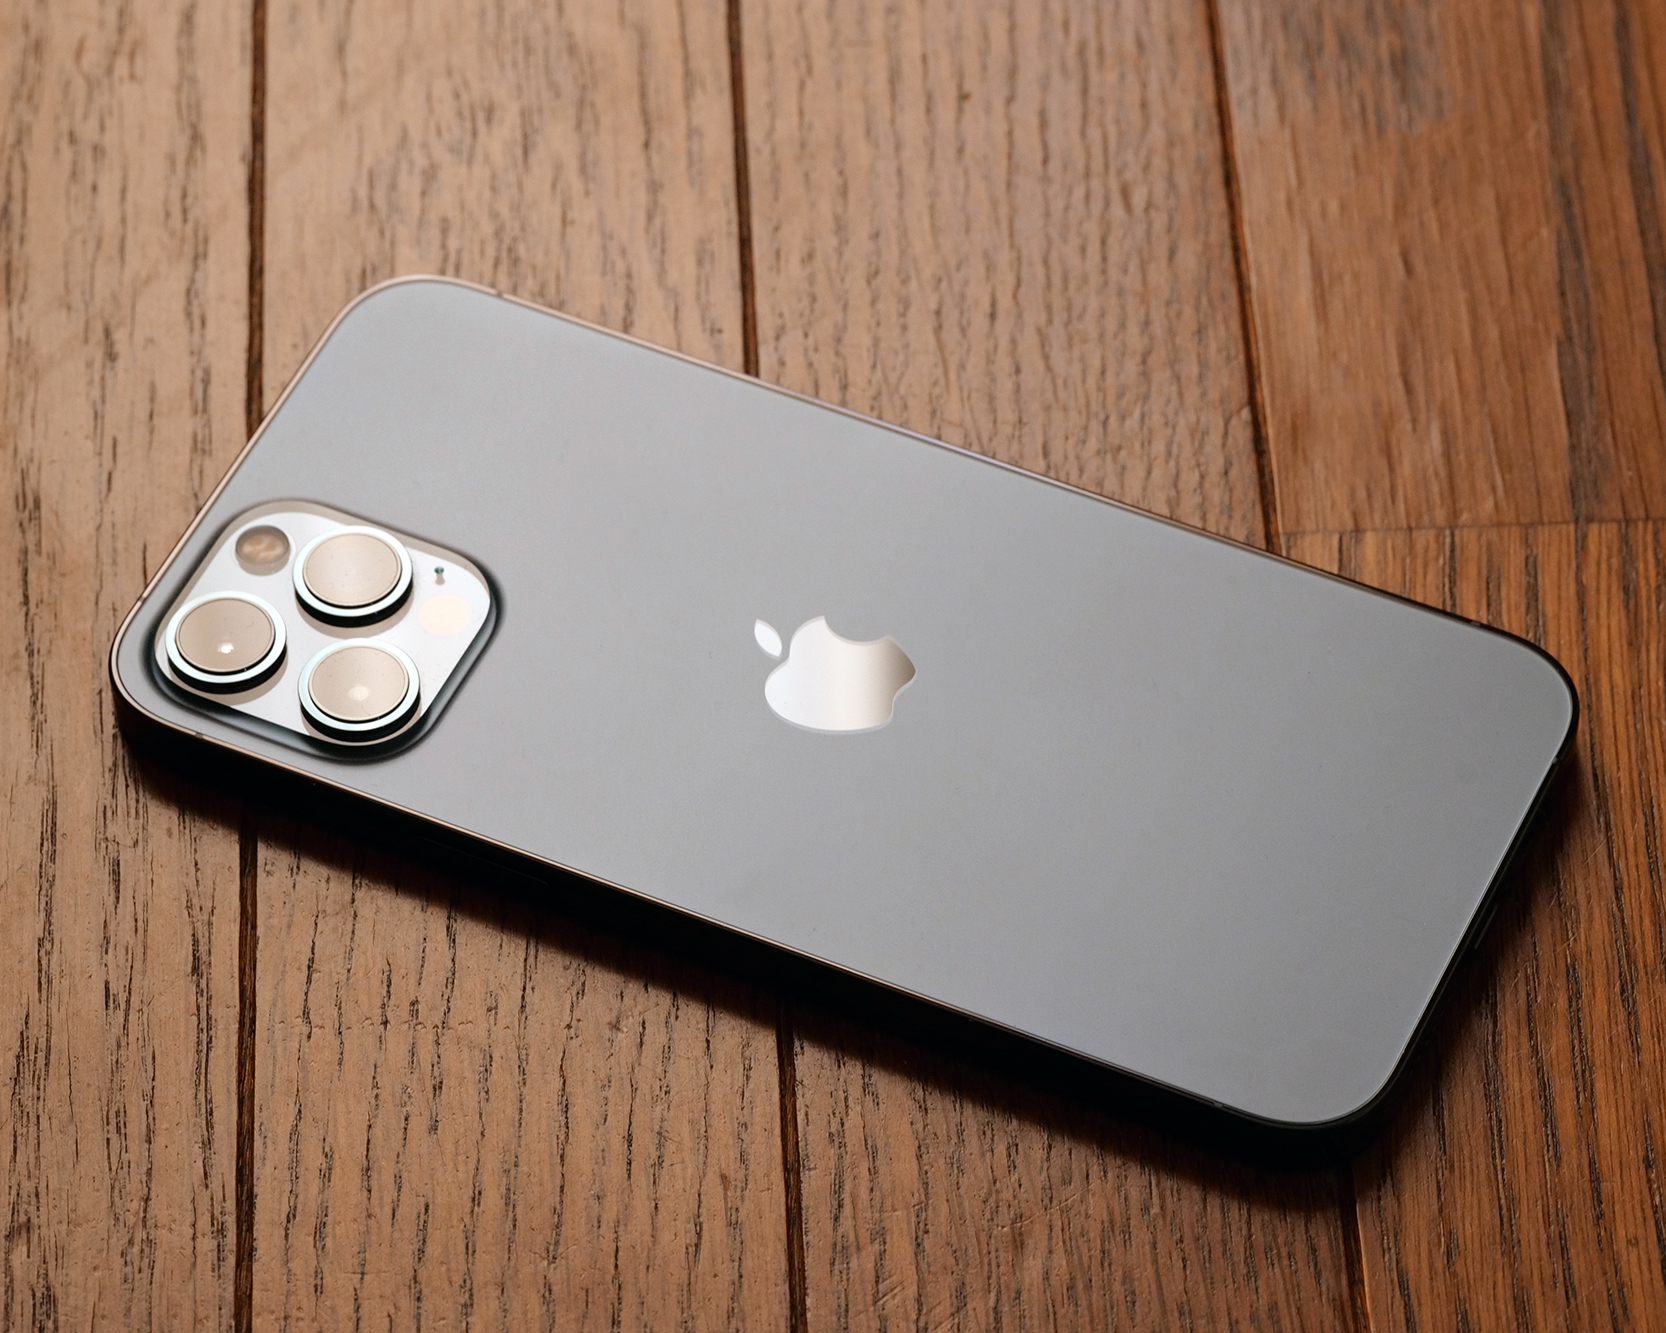 アップル Iphone 12 Pro Max のカメラを試す ケータイ Watch